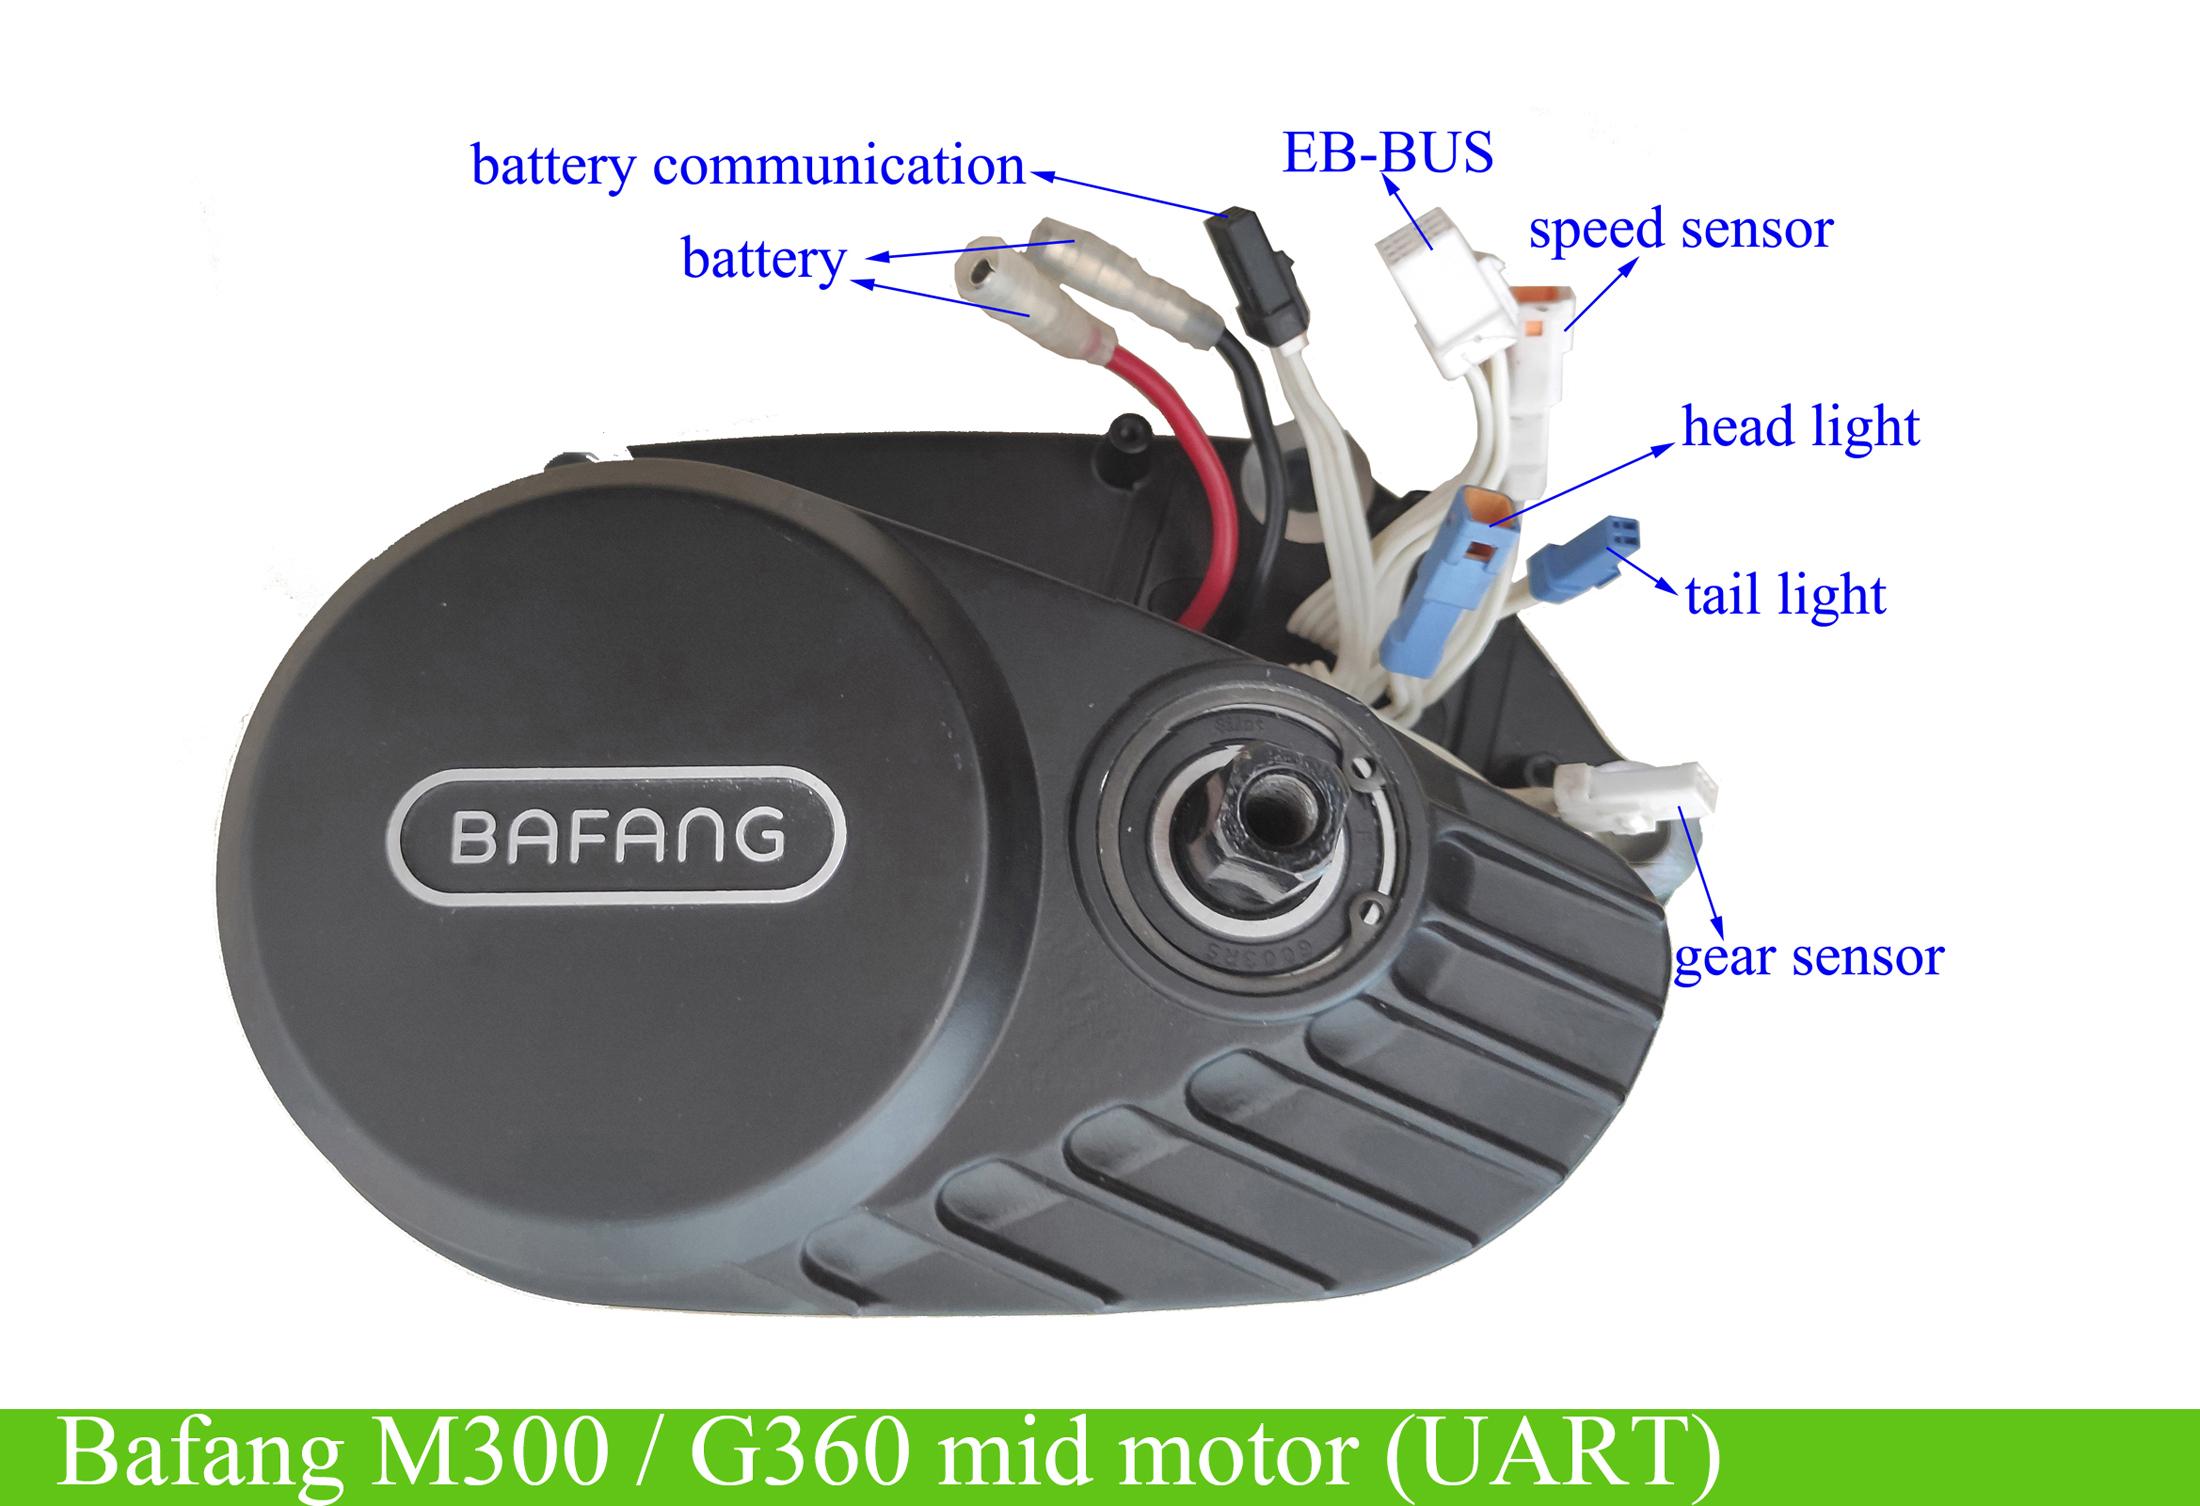 Bafang M300 G360 barebone motor 36V 350W UART -  BBS, ebike  batteries, Bafang M620, Bafang M600, Bafang M500, Bafang M510, KT controller  with display